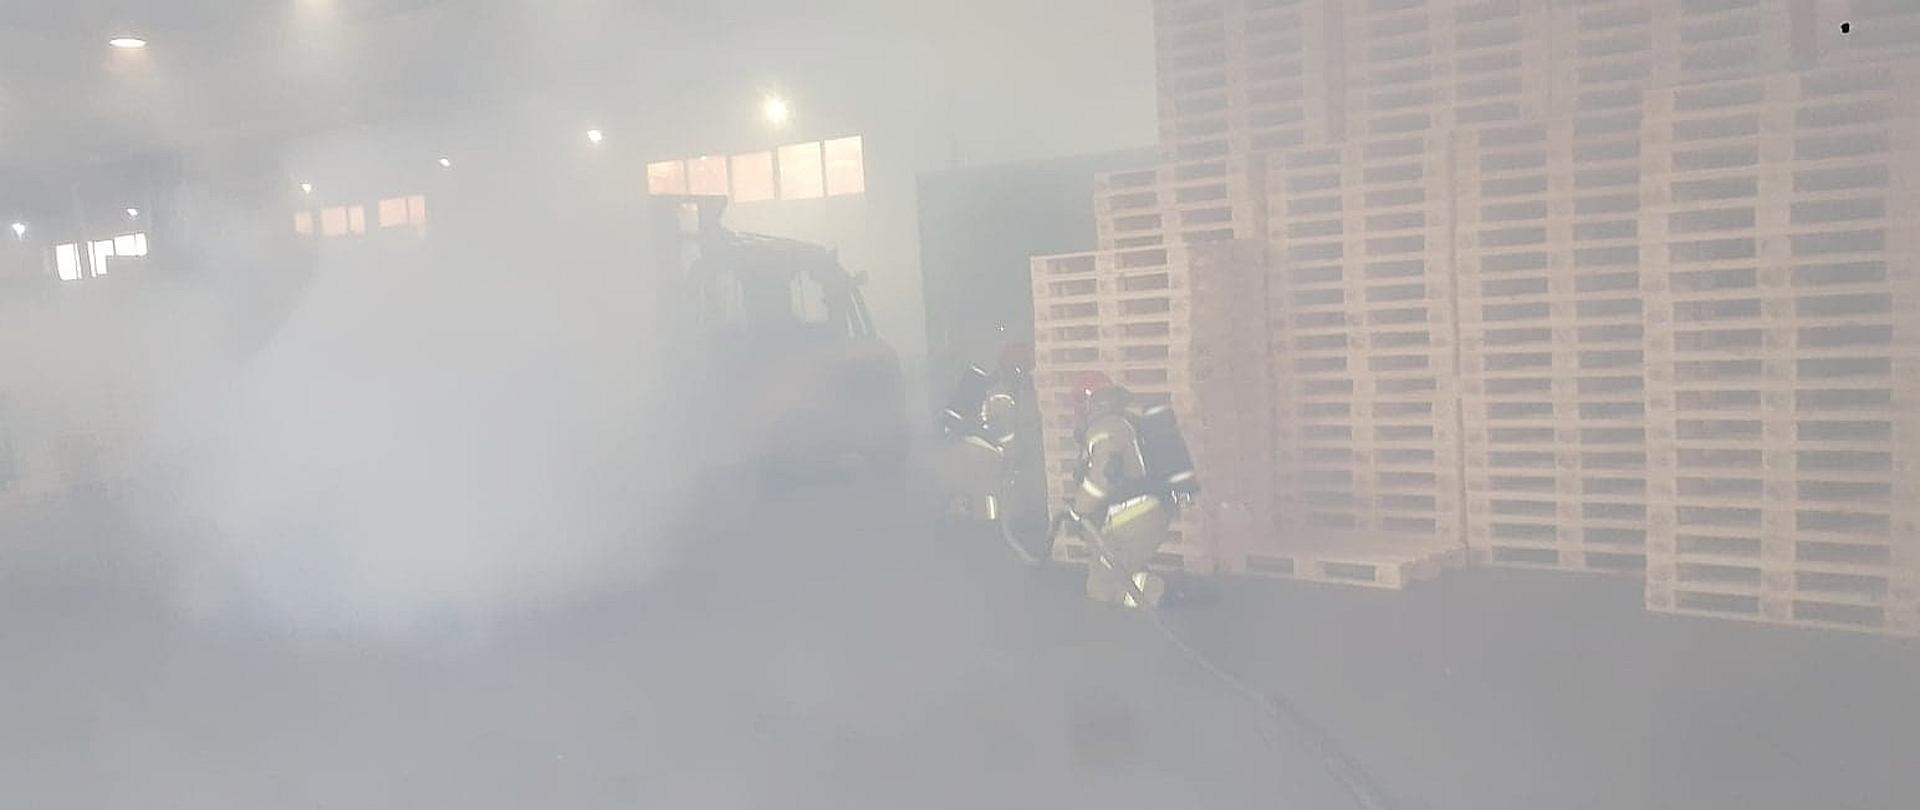 Strażacy ubrani w aparaty OUO idą z linią gaśniczą przez halę na której znajdują się palety. Obiekt jest zadymiony.